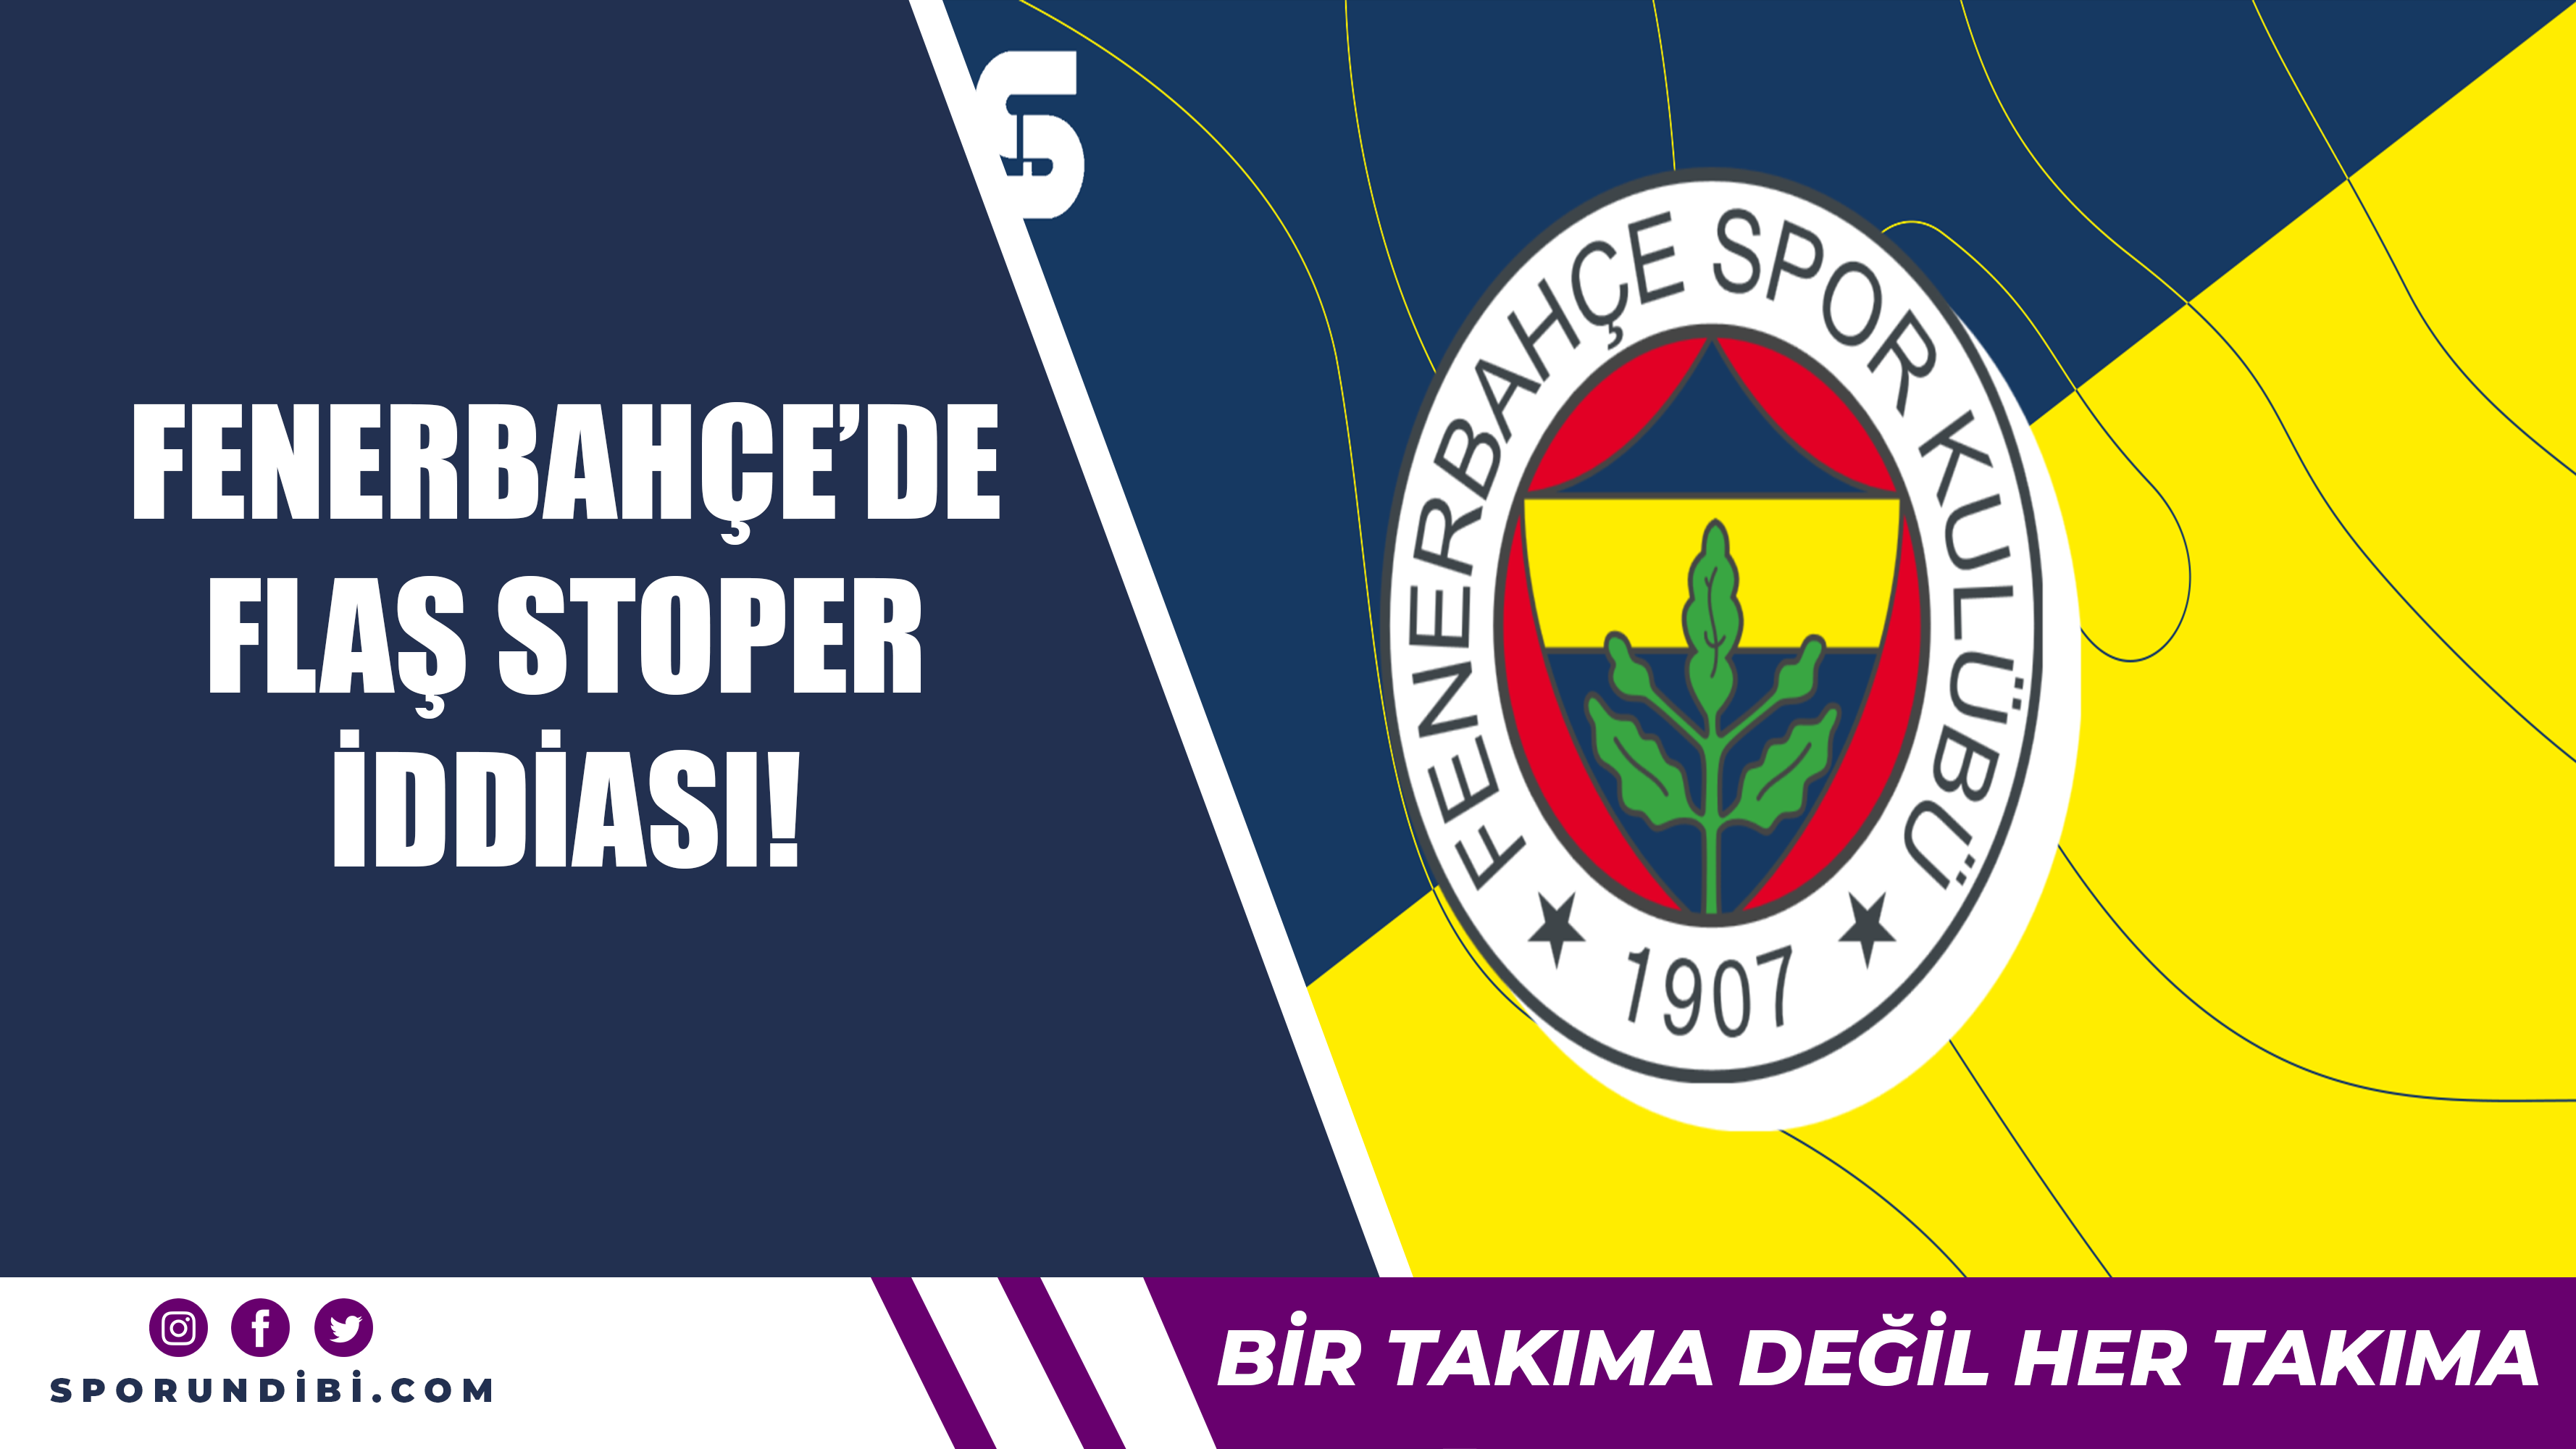 Fenerbahçe'de flaş stoper iddiası!